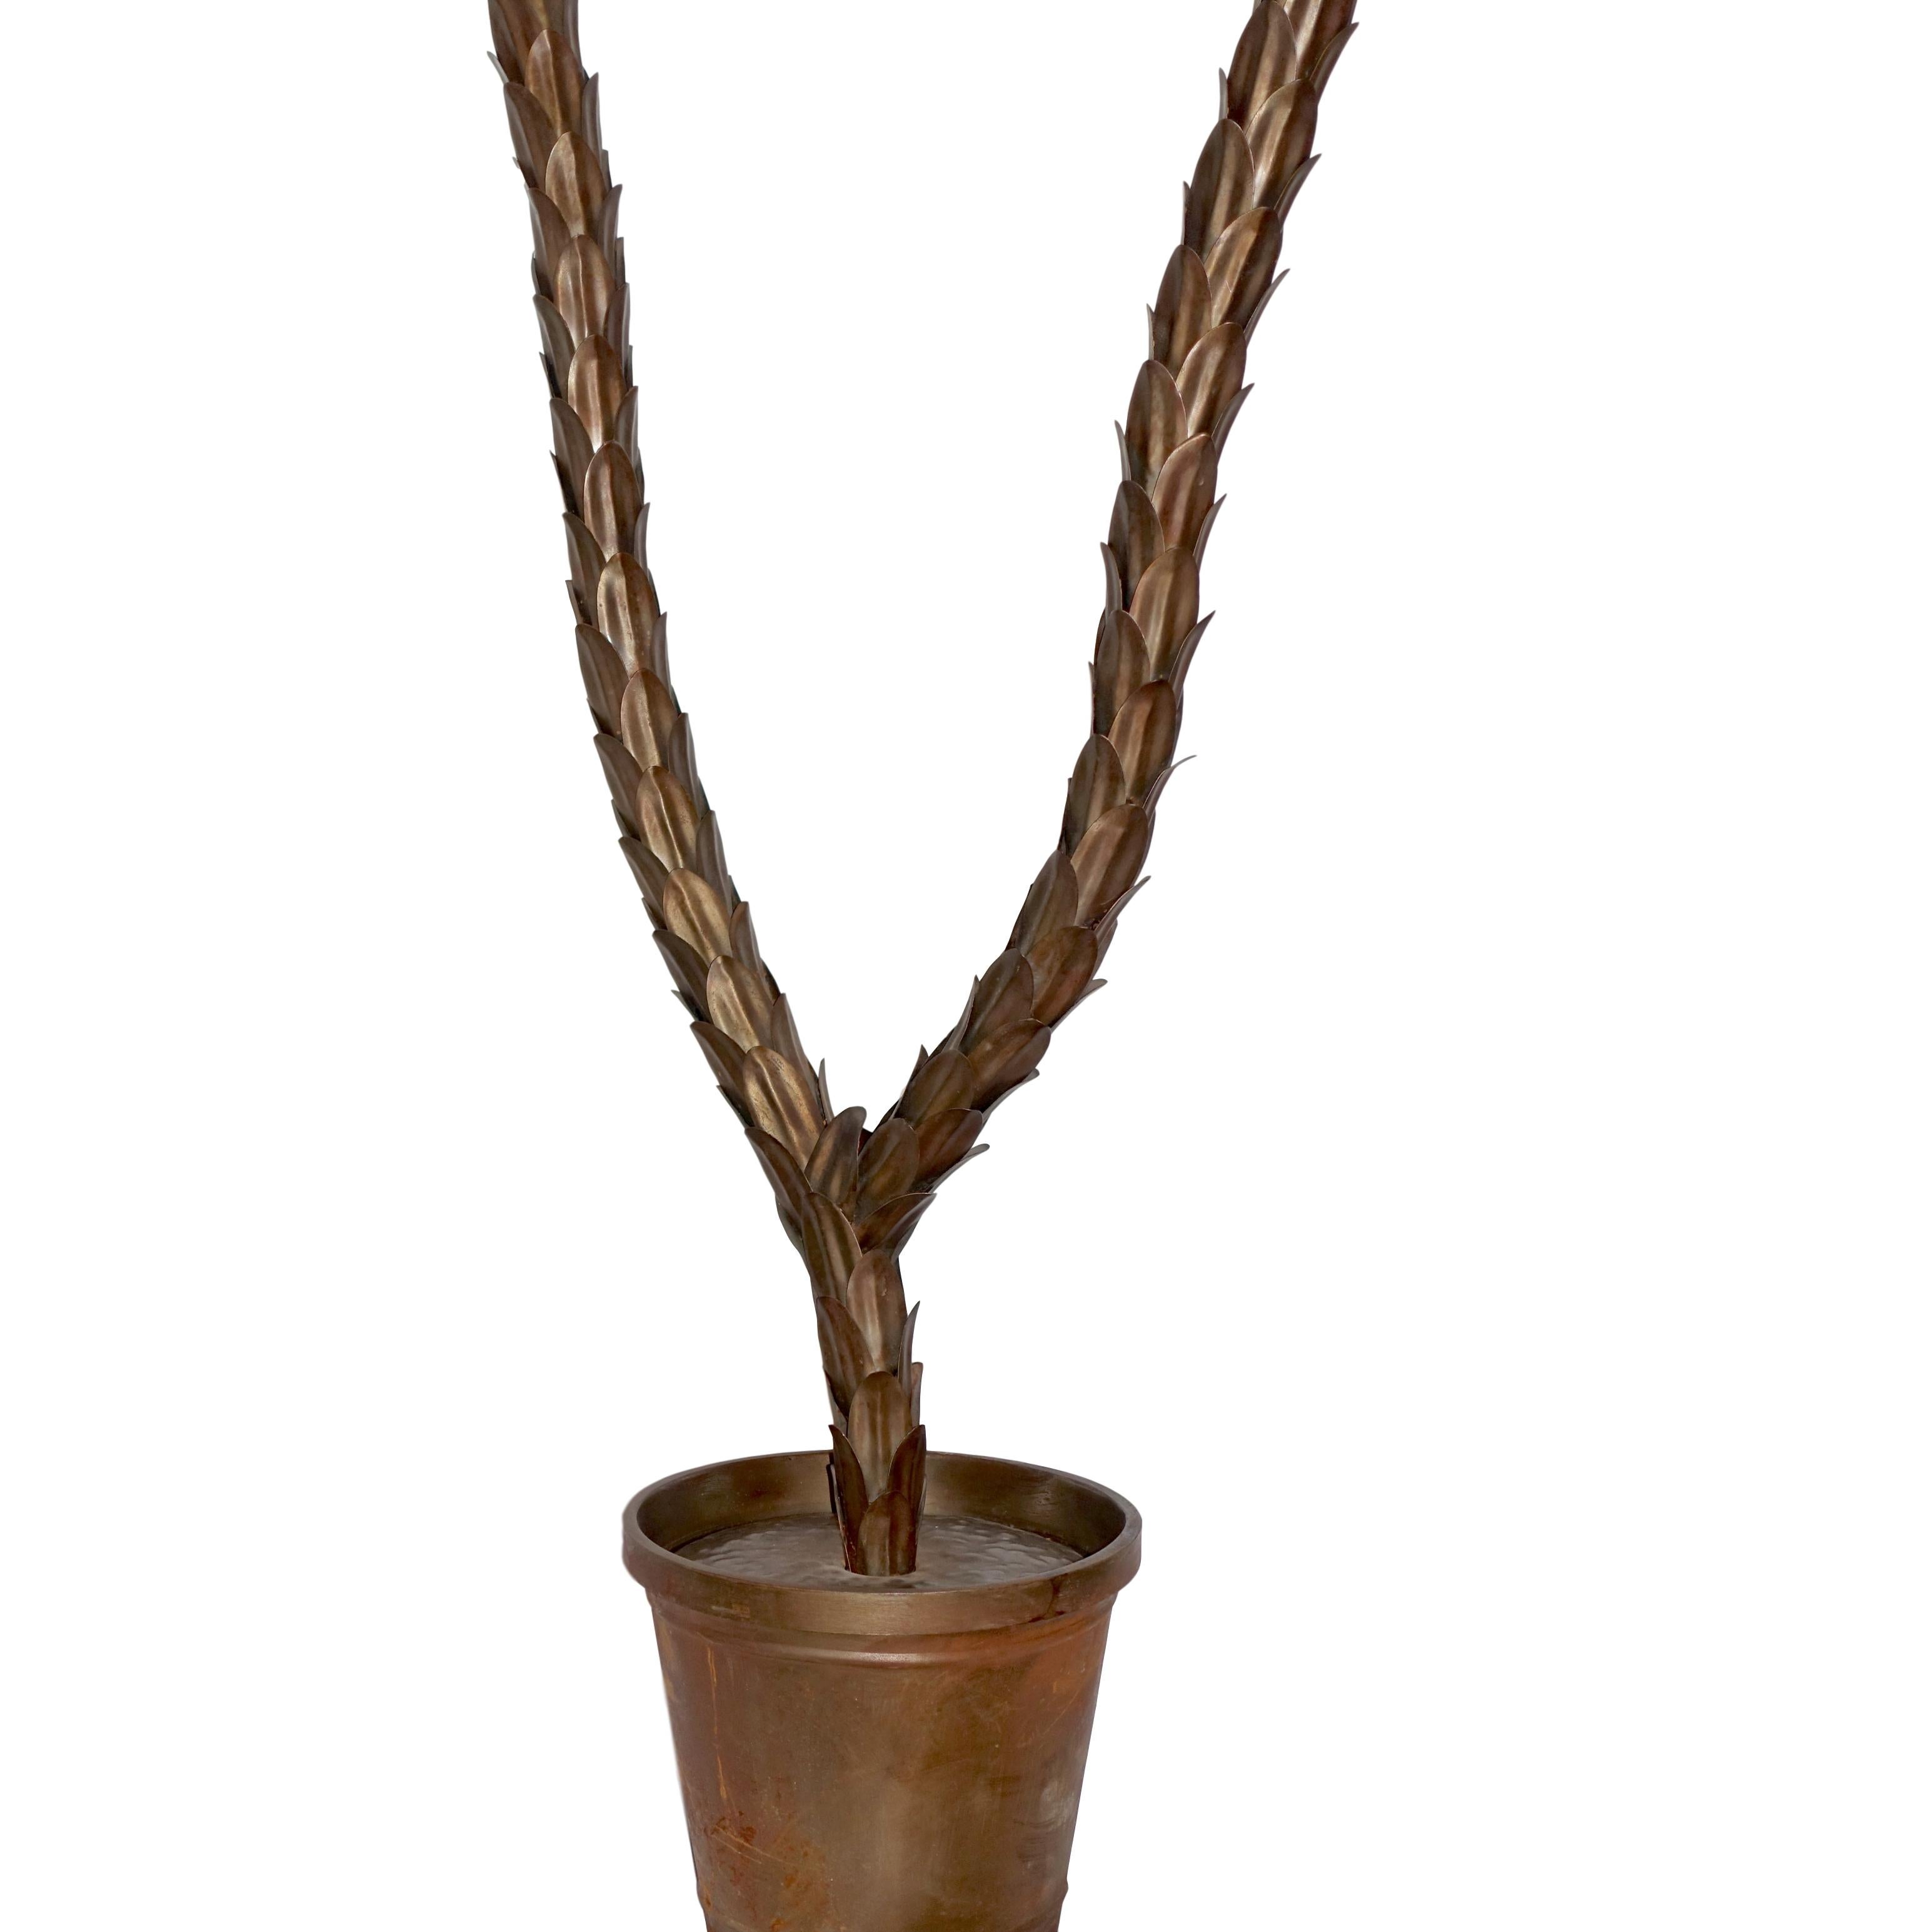 Eine italienische lebensgroße Palme aus gehämmertem Metall aus den 1940er Jahren mit originaler Patina.

Abmessungen:
Höhe 93,5
Tiefe 38,5
Durchmesser 66